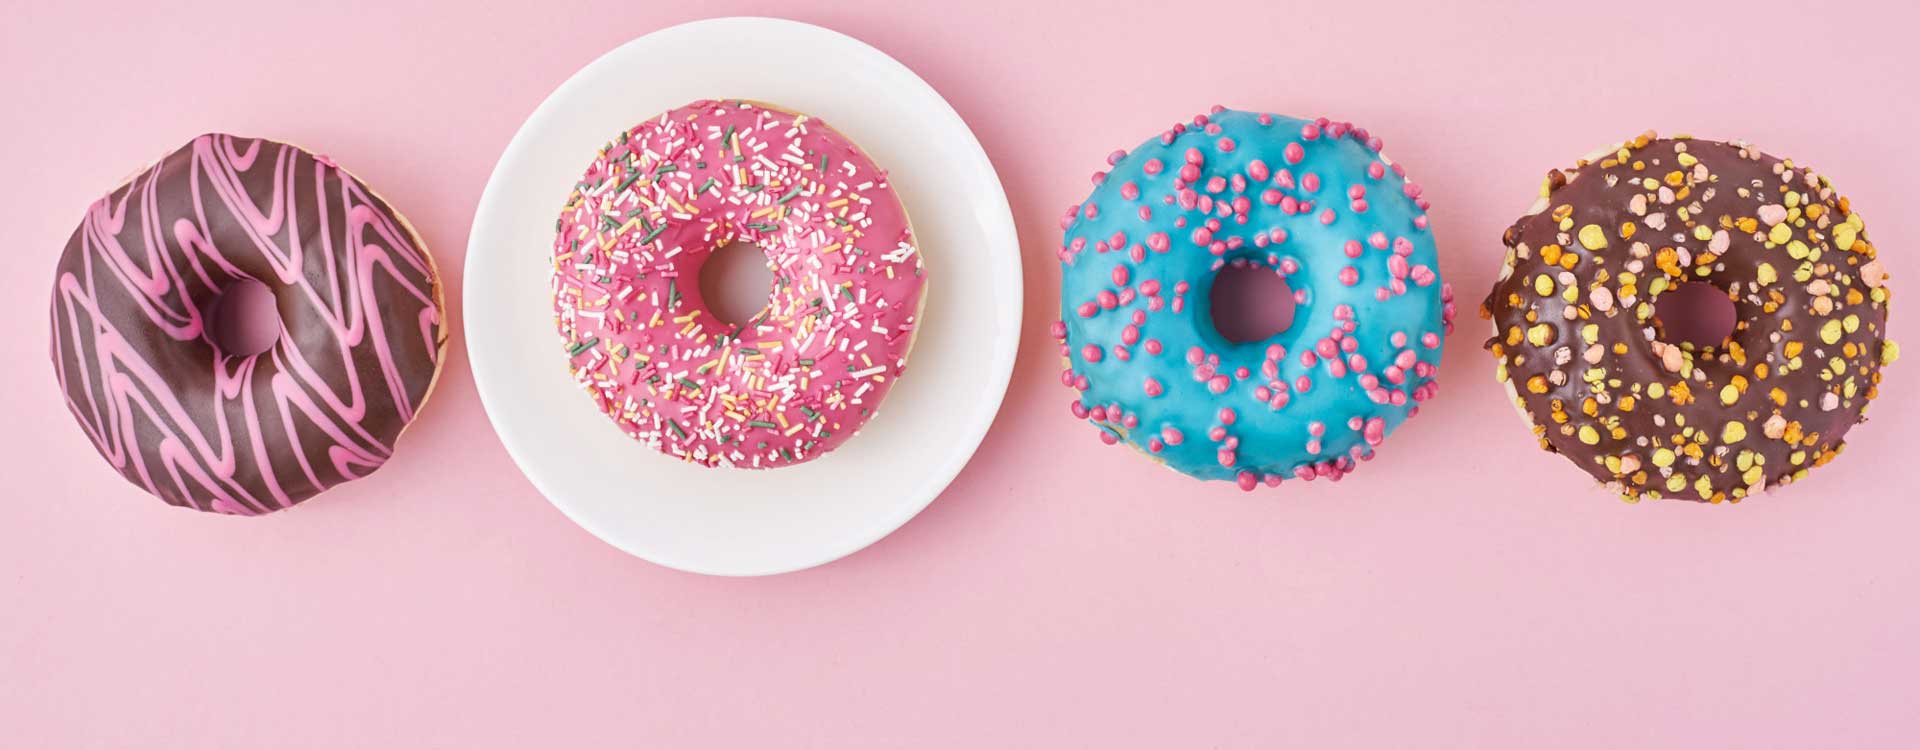 Zucker – bunt glasierte Donuts